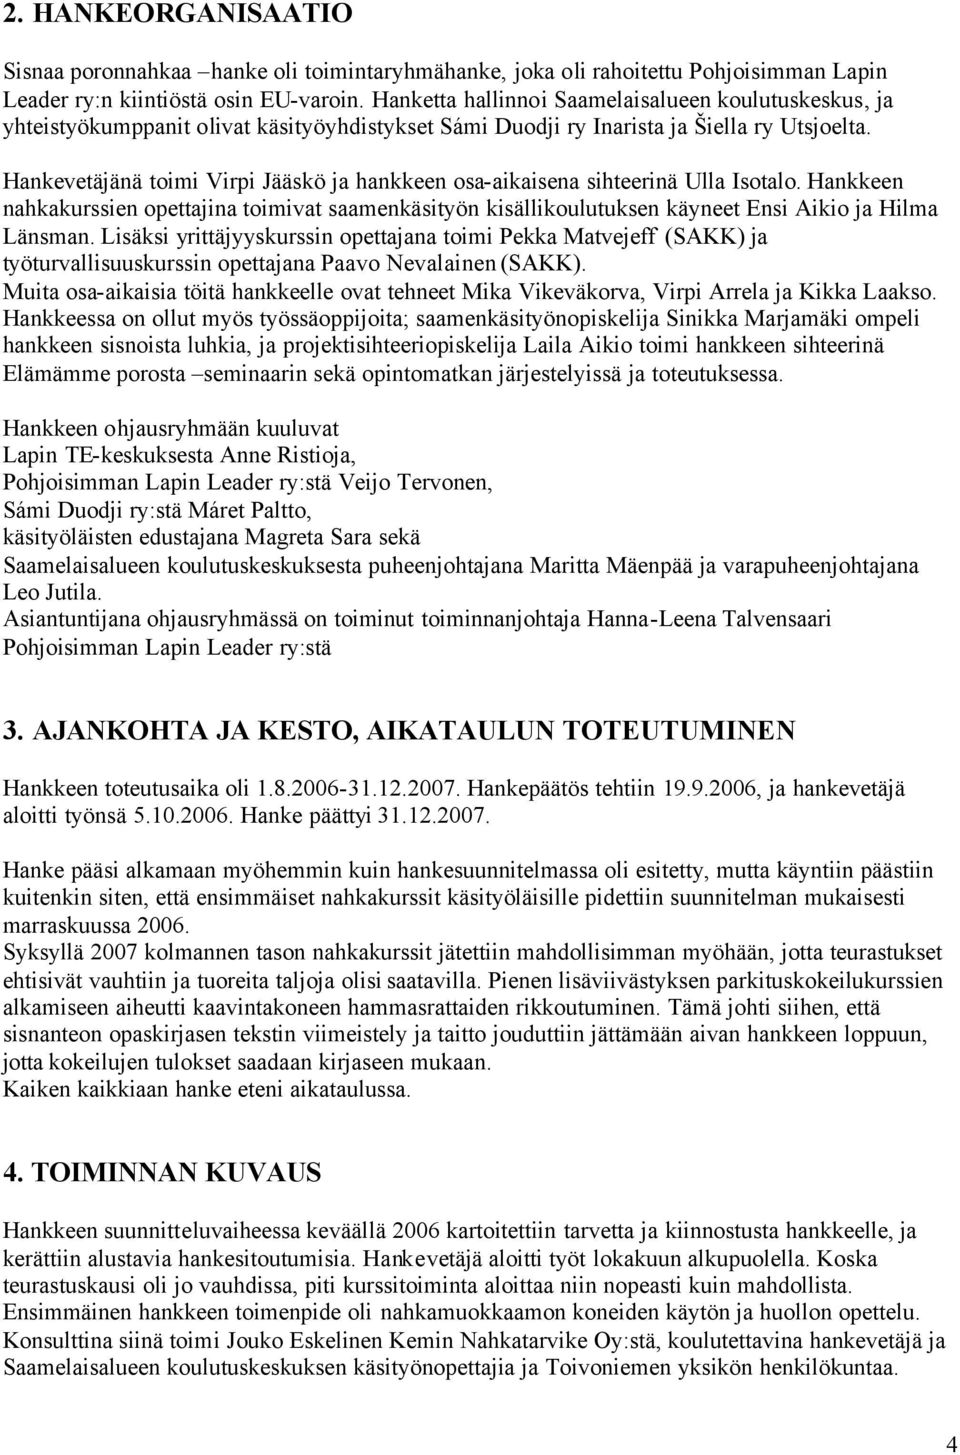 Hankevetäjänä toimi Virpi Jääskö ja hankkeen osa-aikaisena sihteerinä Ulla Isotalo. Hankkeen nahkakurssien opettajina toimivat saamenkäsityön kisällikoulutuksen käyneet Ensi Aikio ja Hilma Länsman.